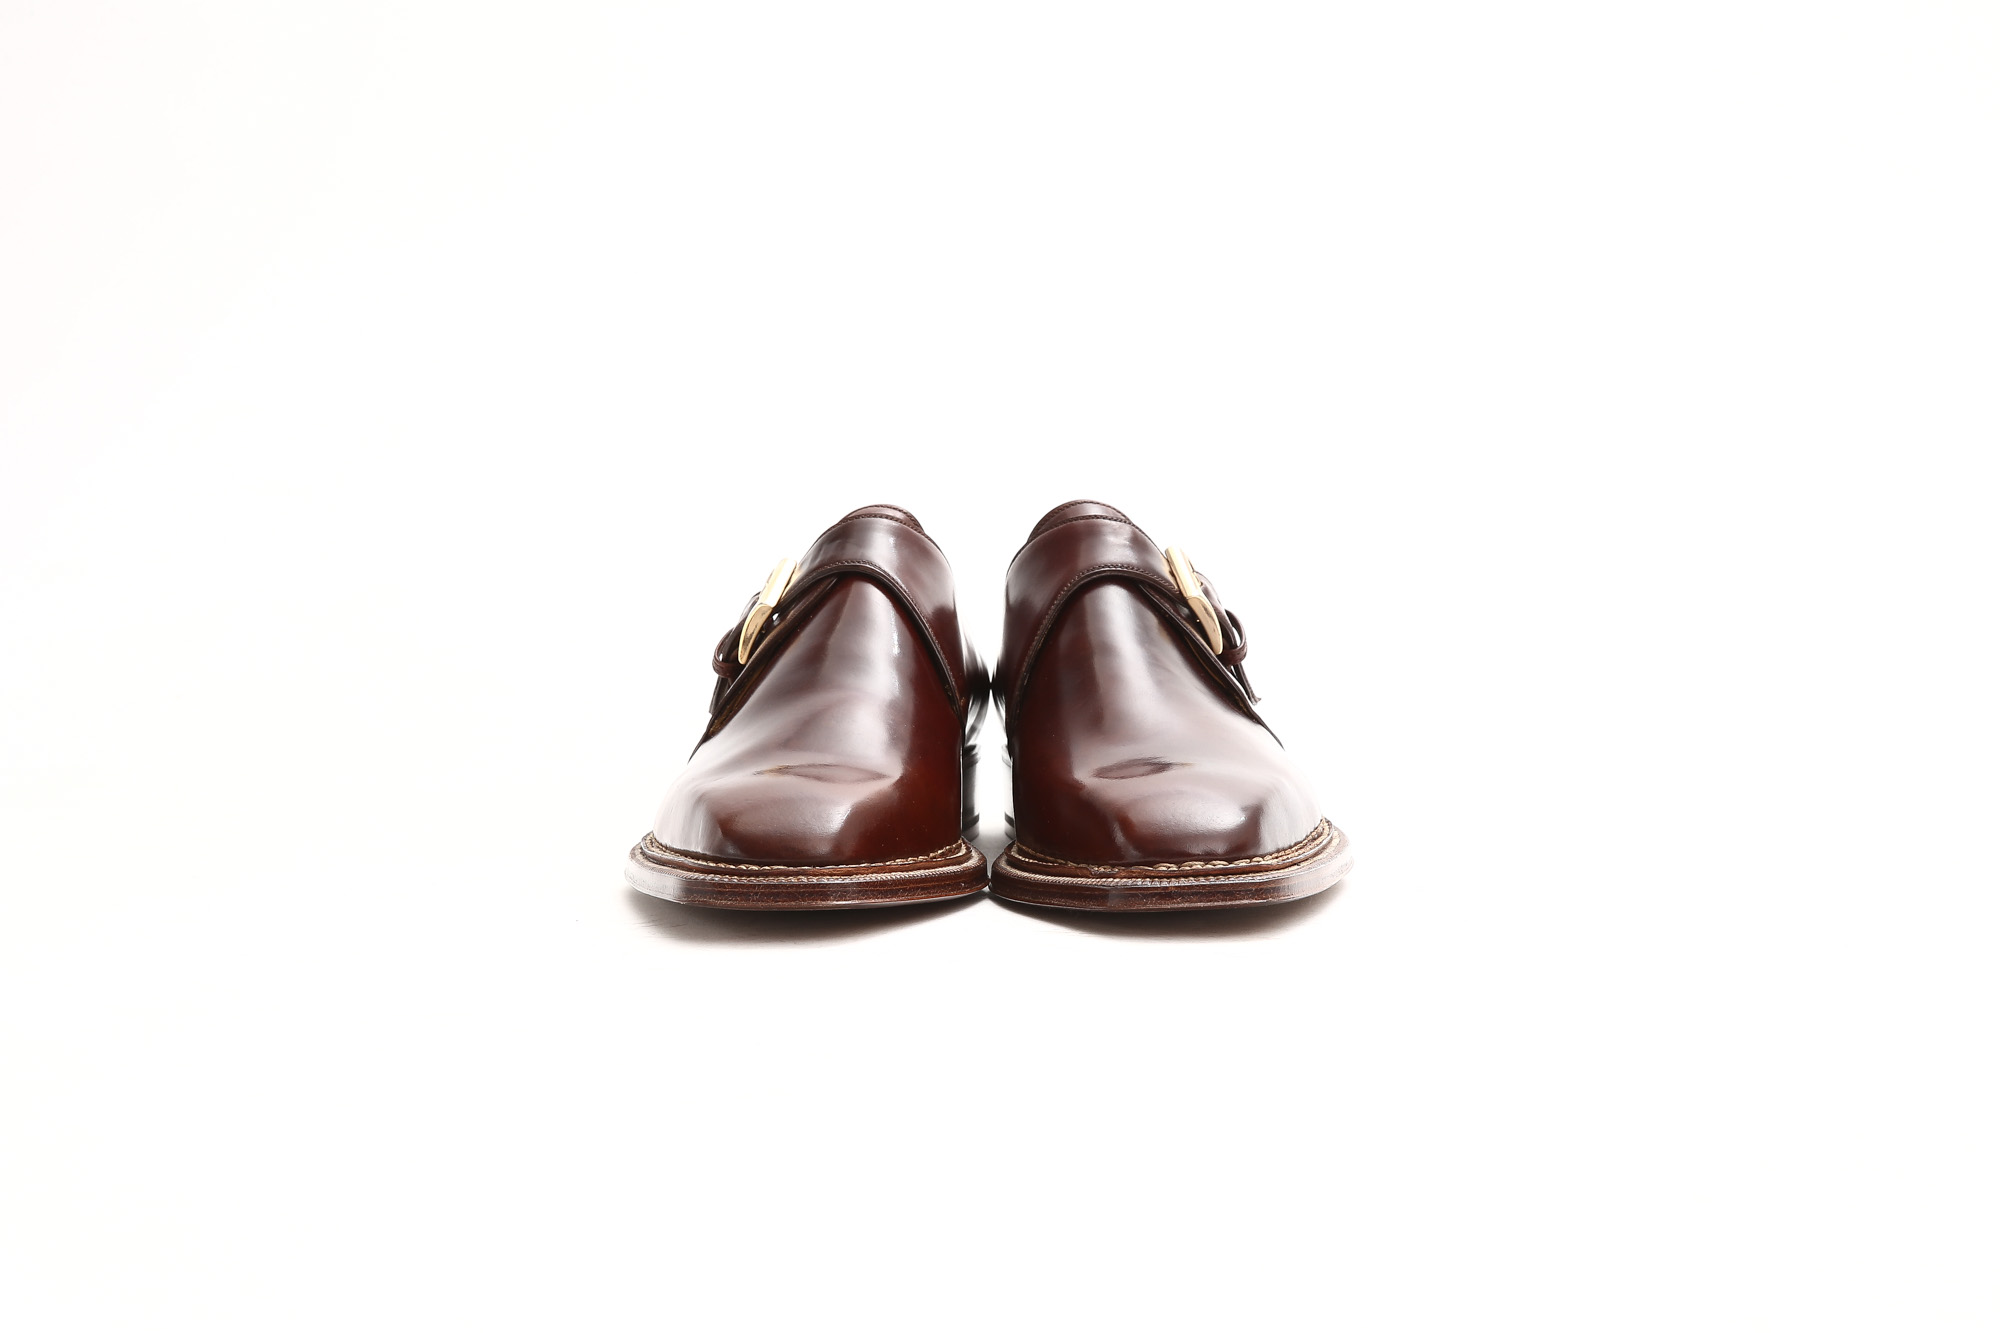 ENZO BONAFE (エンツォボナフェ) 【ART.3721】Single Monk Strap Shoes シングルモンクストラップシューズ CORDOVAN コードバン ノルベジェーゼ製法 ドレスシューズ No.4(#4) made in italy (イタリア製) 2018 春夏新作 愛知 名古屋 Alto e Diritto アルト エ デリット enzobonafe コードバン no4 ナンバーフォー